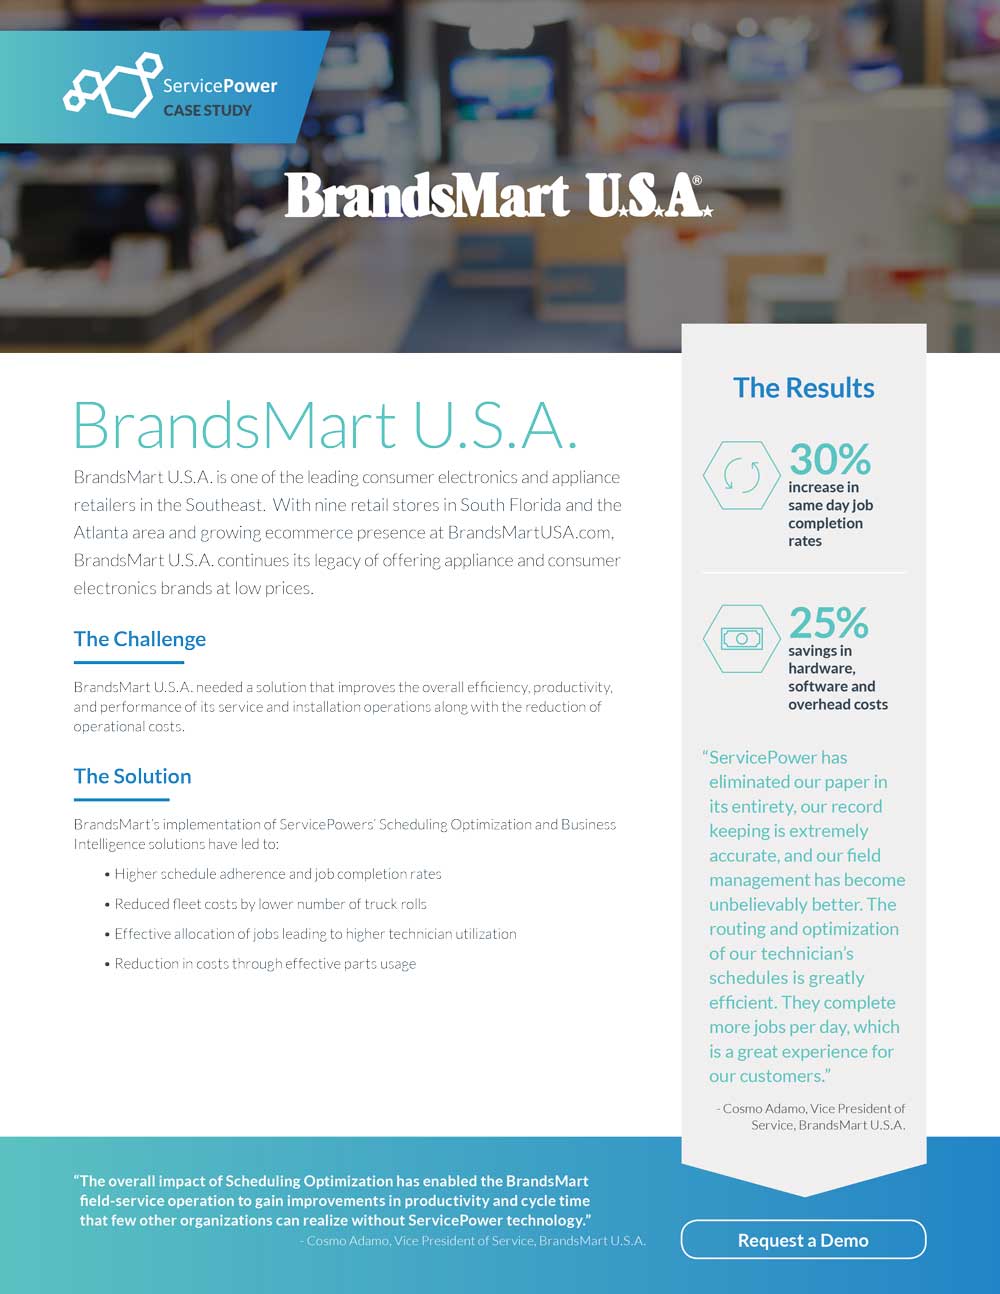 BrandSmart Receives Great Results After Eliminating Paper